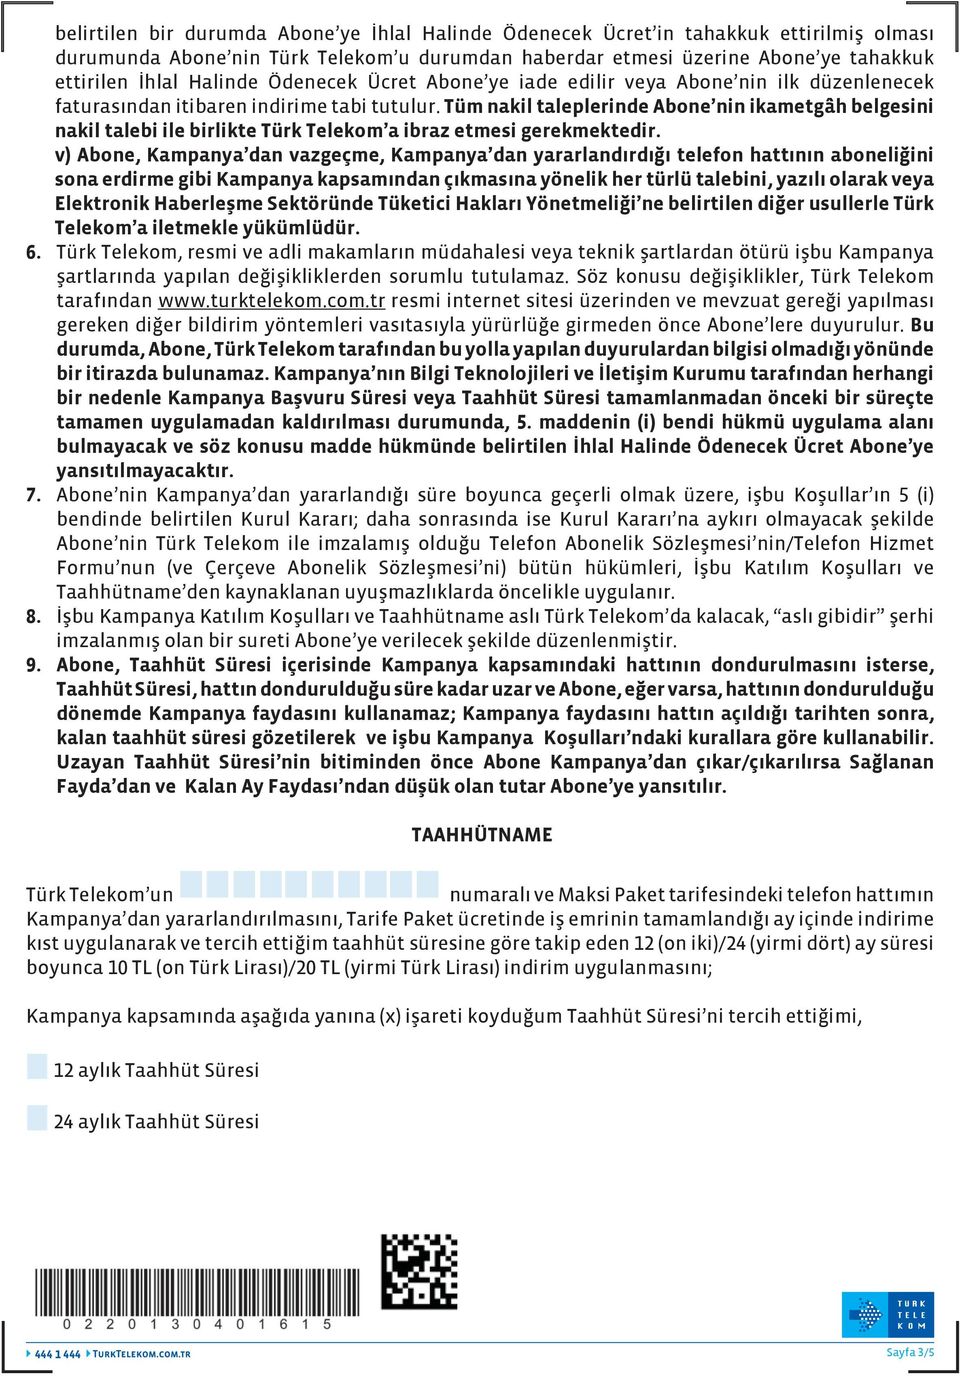 Tüm nakil taleplerinde Abone nin ikametgâh belgesini nakil talebi ile birlikte Türk Telekom a ibraz etmesi gerekmektedir.